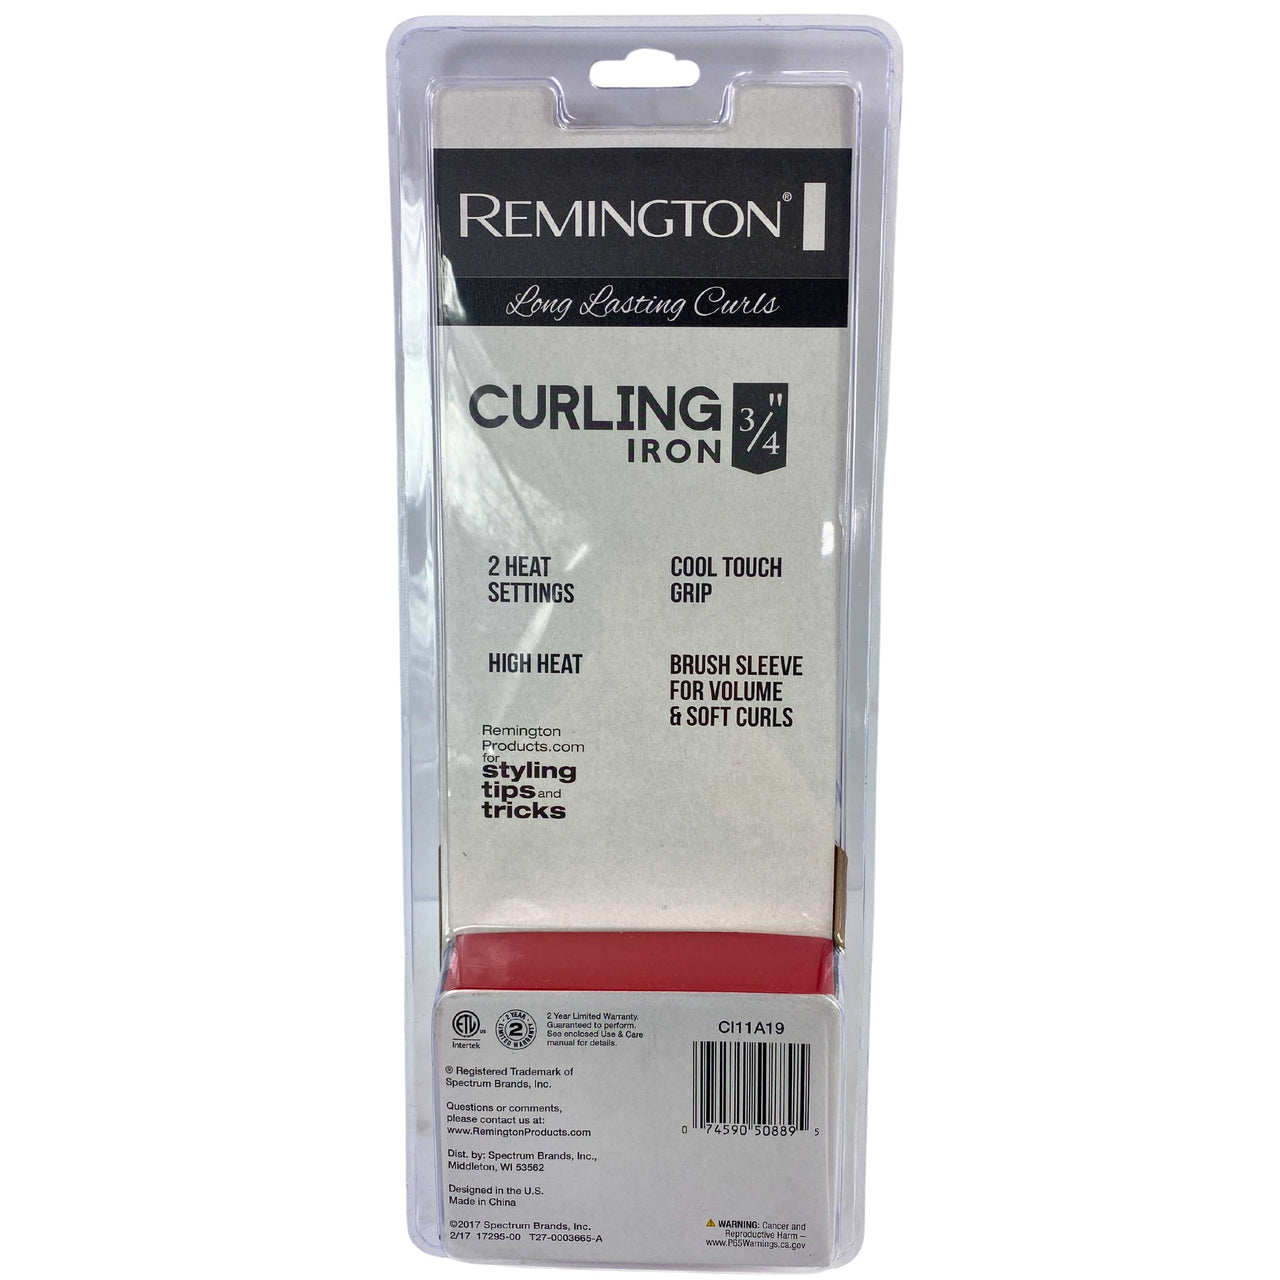 Remington Curling Iron 3/4" Barrel 2 Heat Settings 